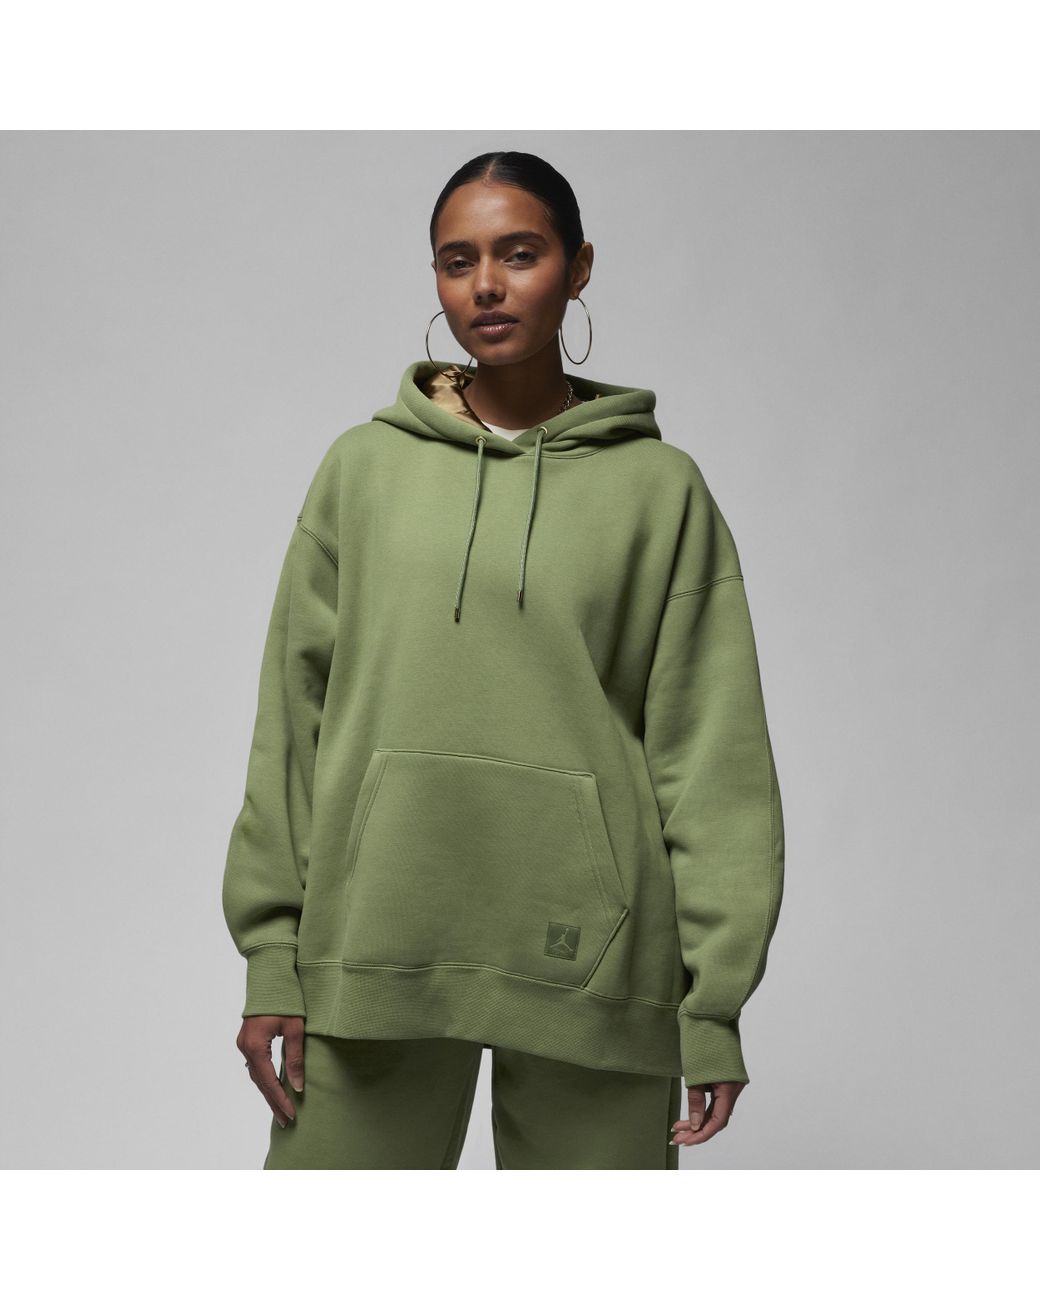 Nike Jordan Flight Fleece Pullover Hoodie in Green | Lyst Australia